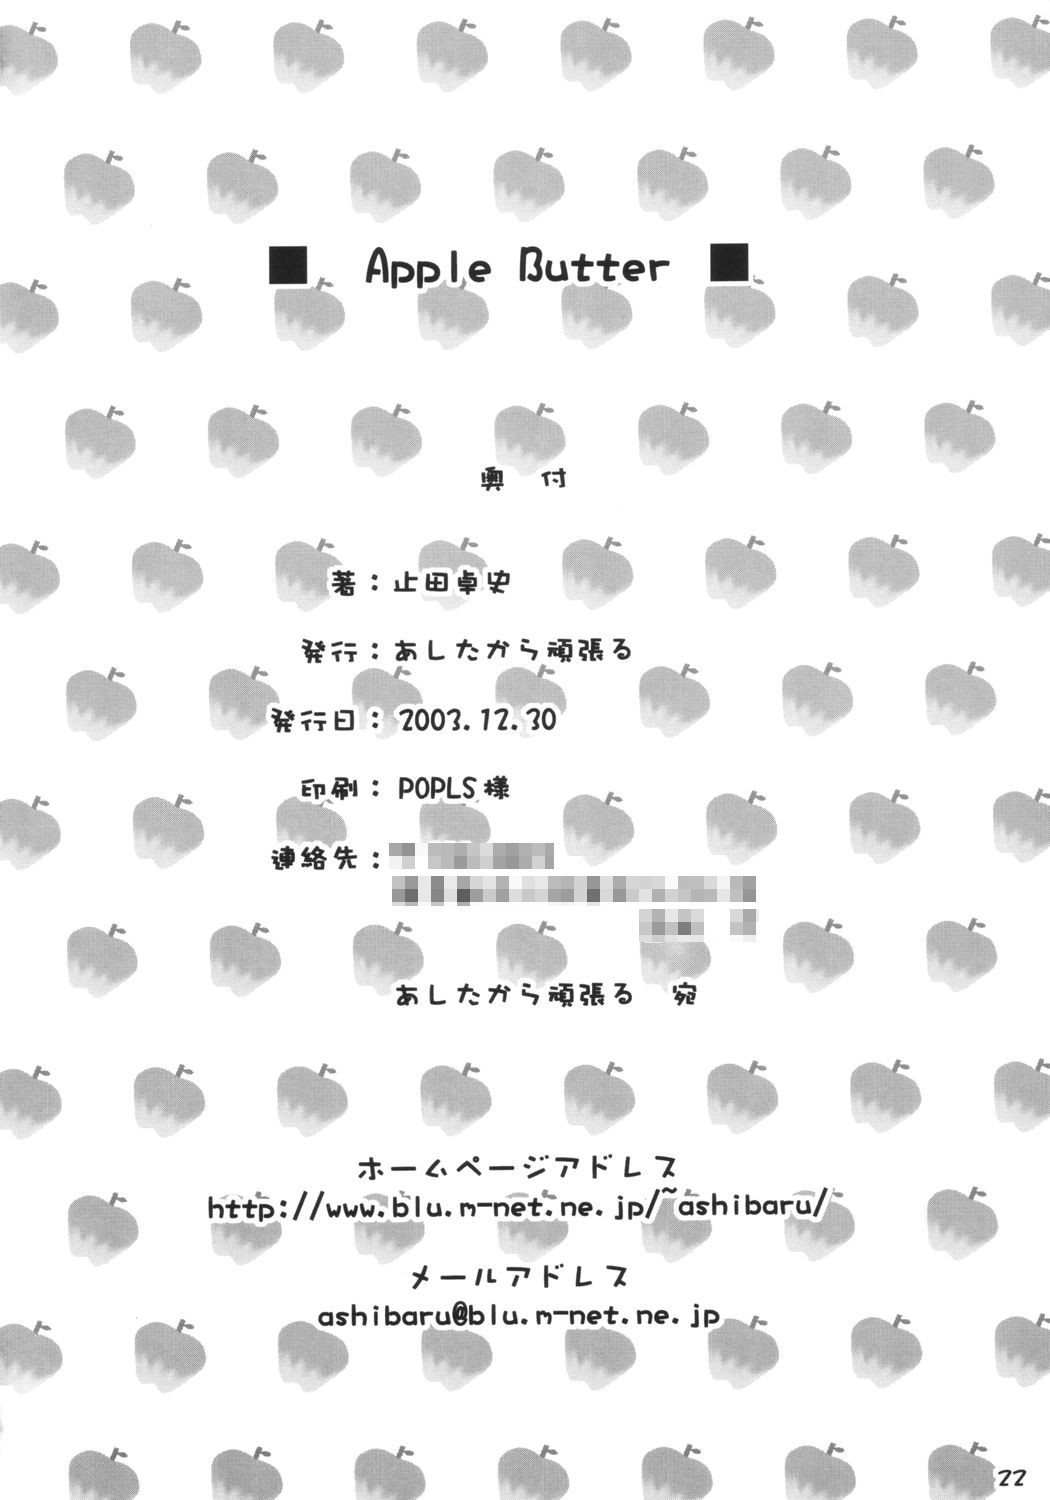 [Ashitakara-Ganbaru] - Apple Butter 